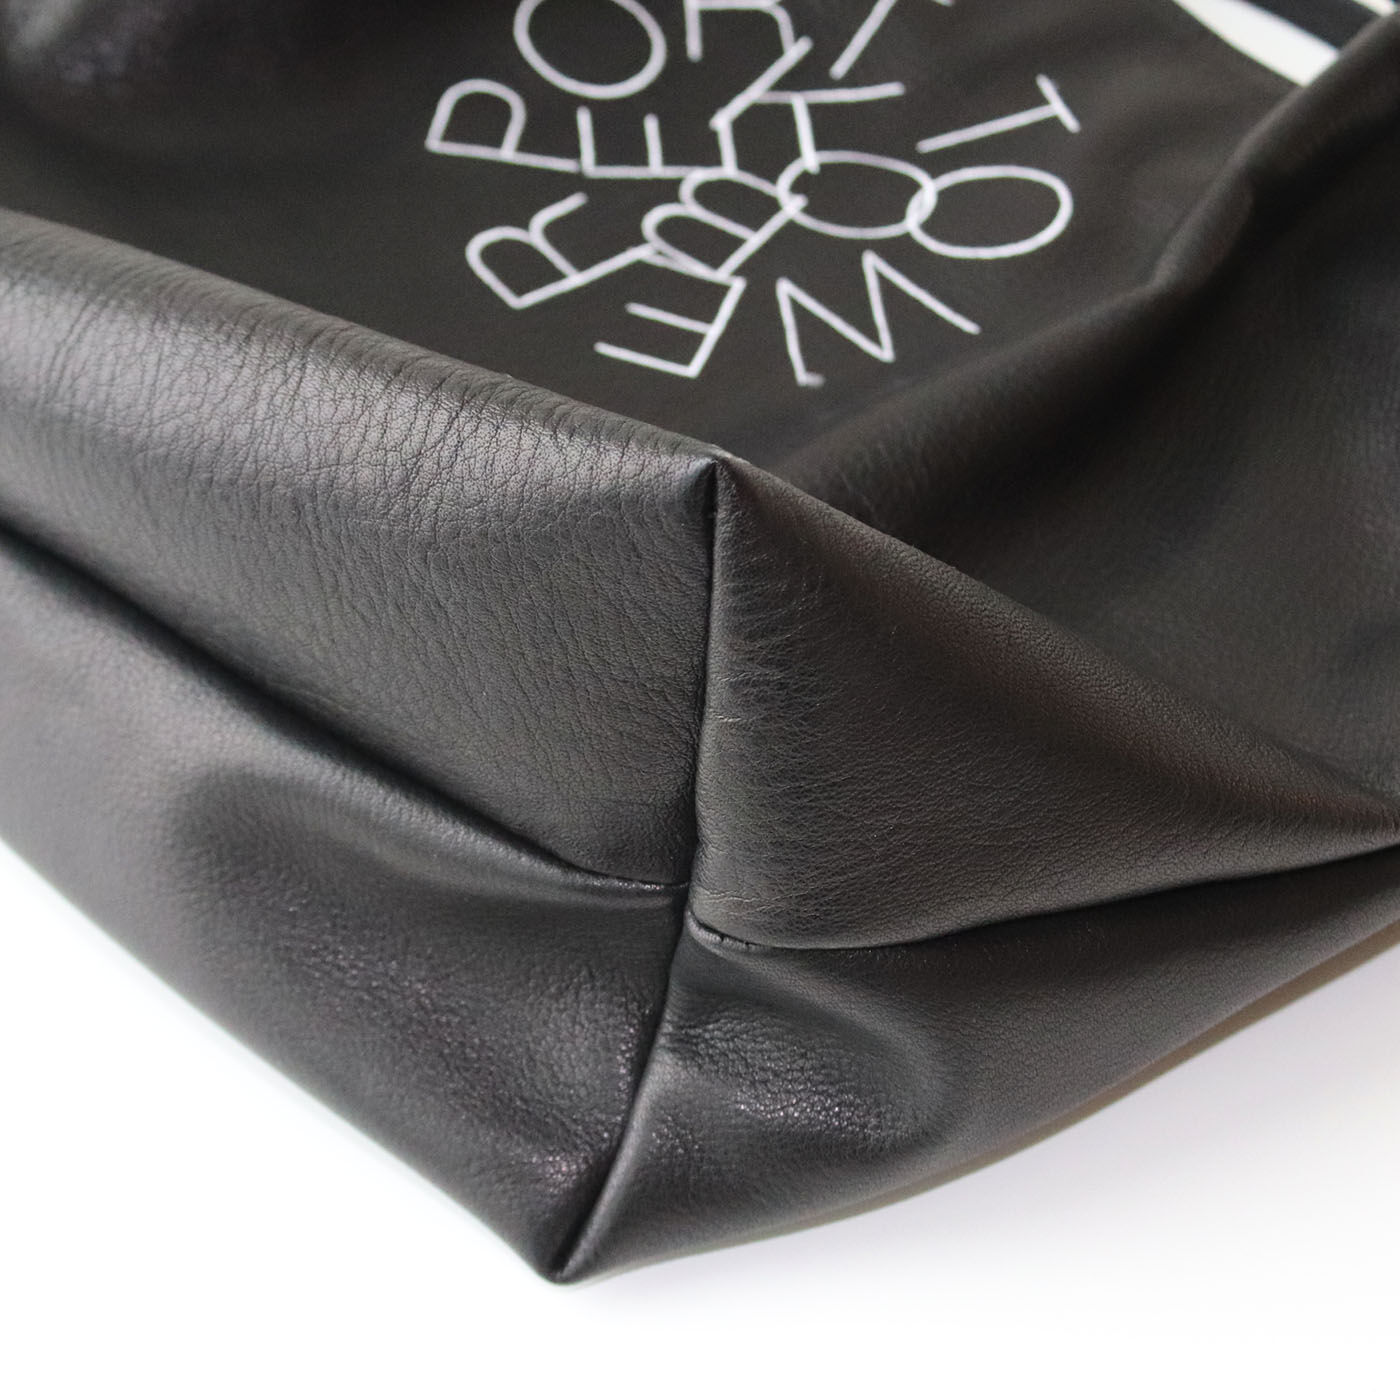 フェリシモコレクション|ブリリアンス神戸基金 KOBE PORT TOWER 福岡の鞄作家が作った 職人本革のカーポラヴォーロトート〈Black〉